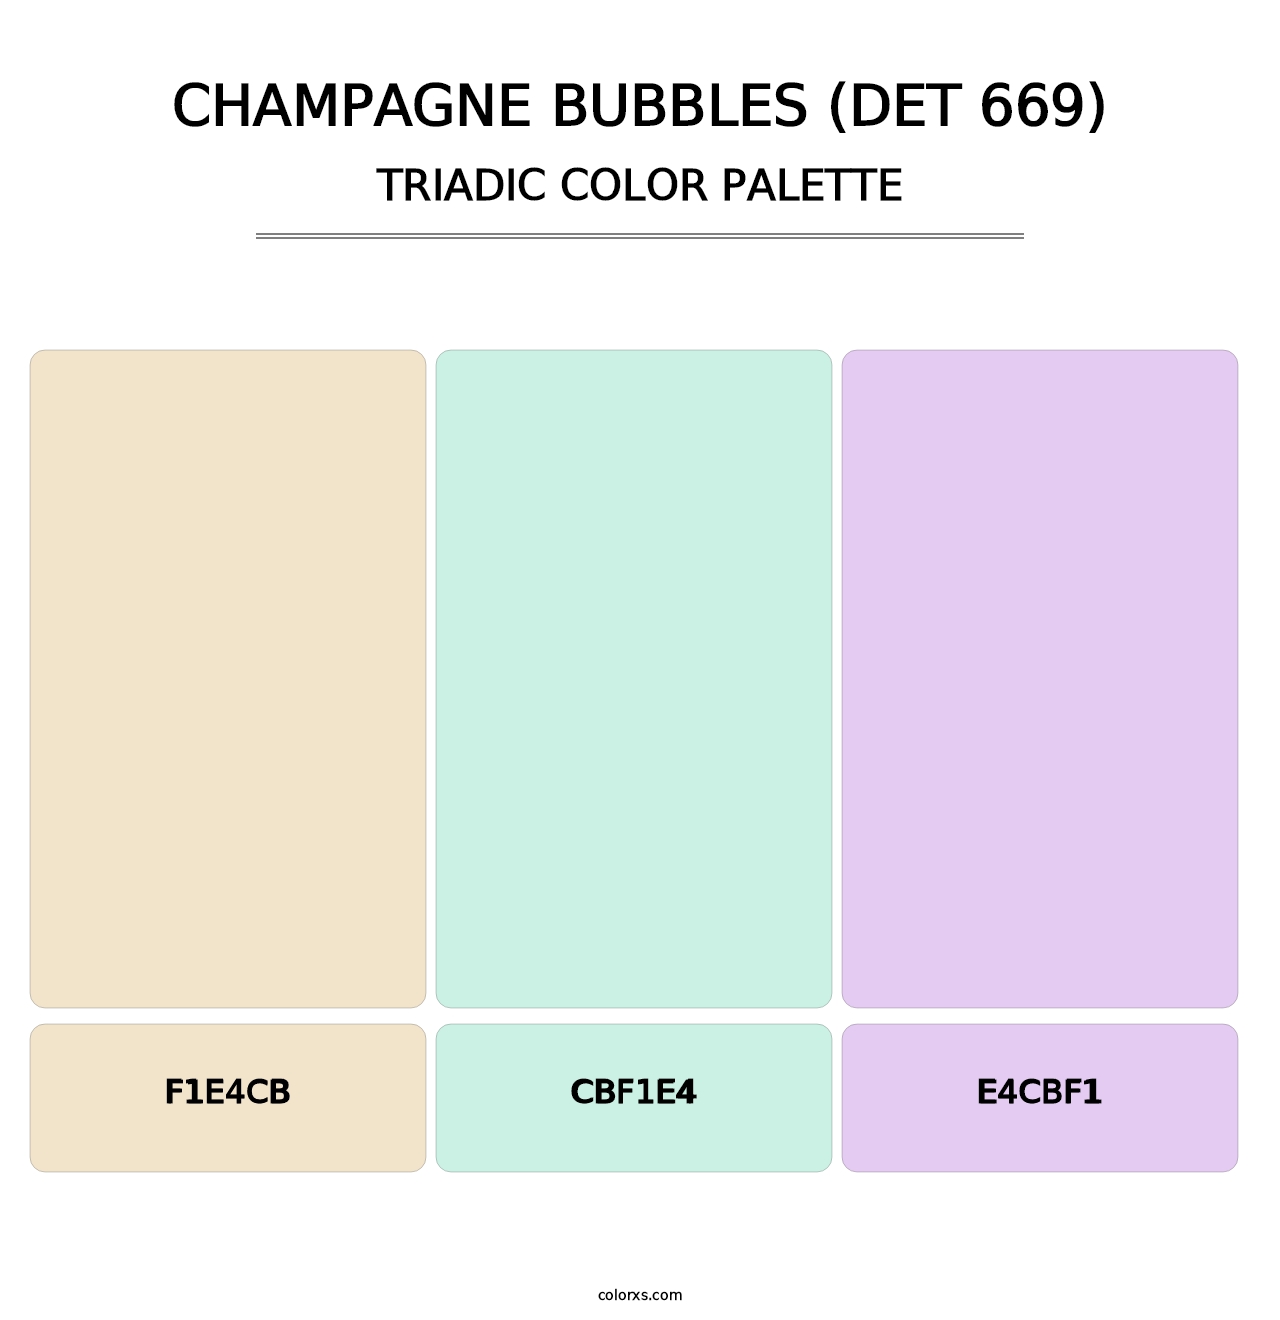 Champagne Bubbles (DET 669) - Triadic Color Palette